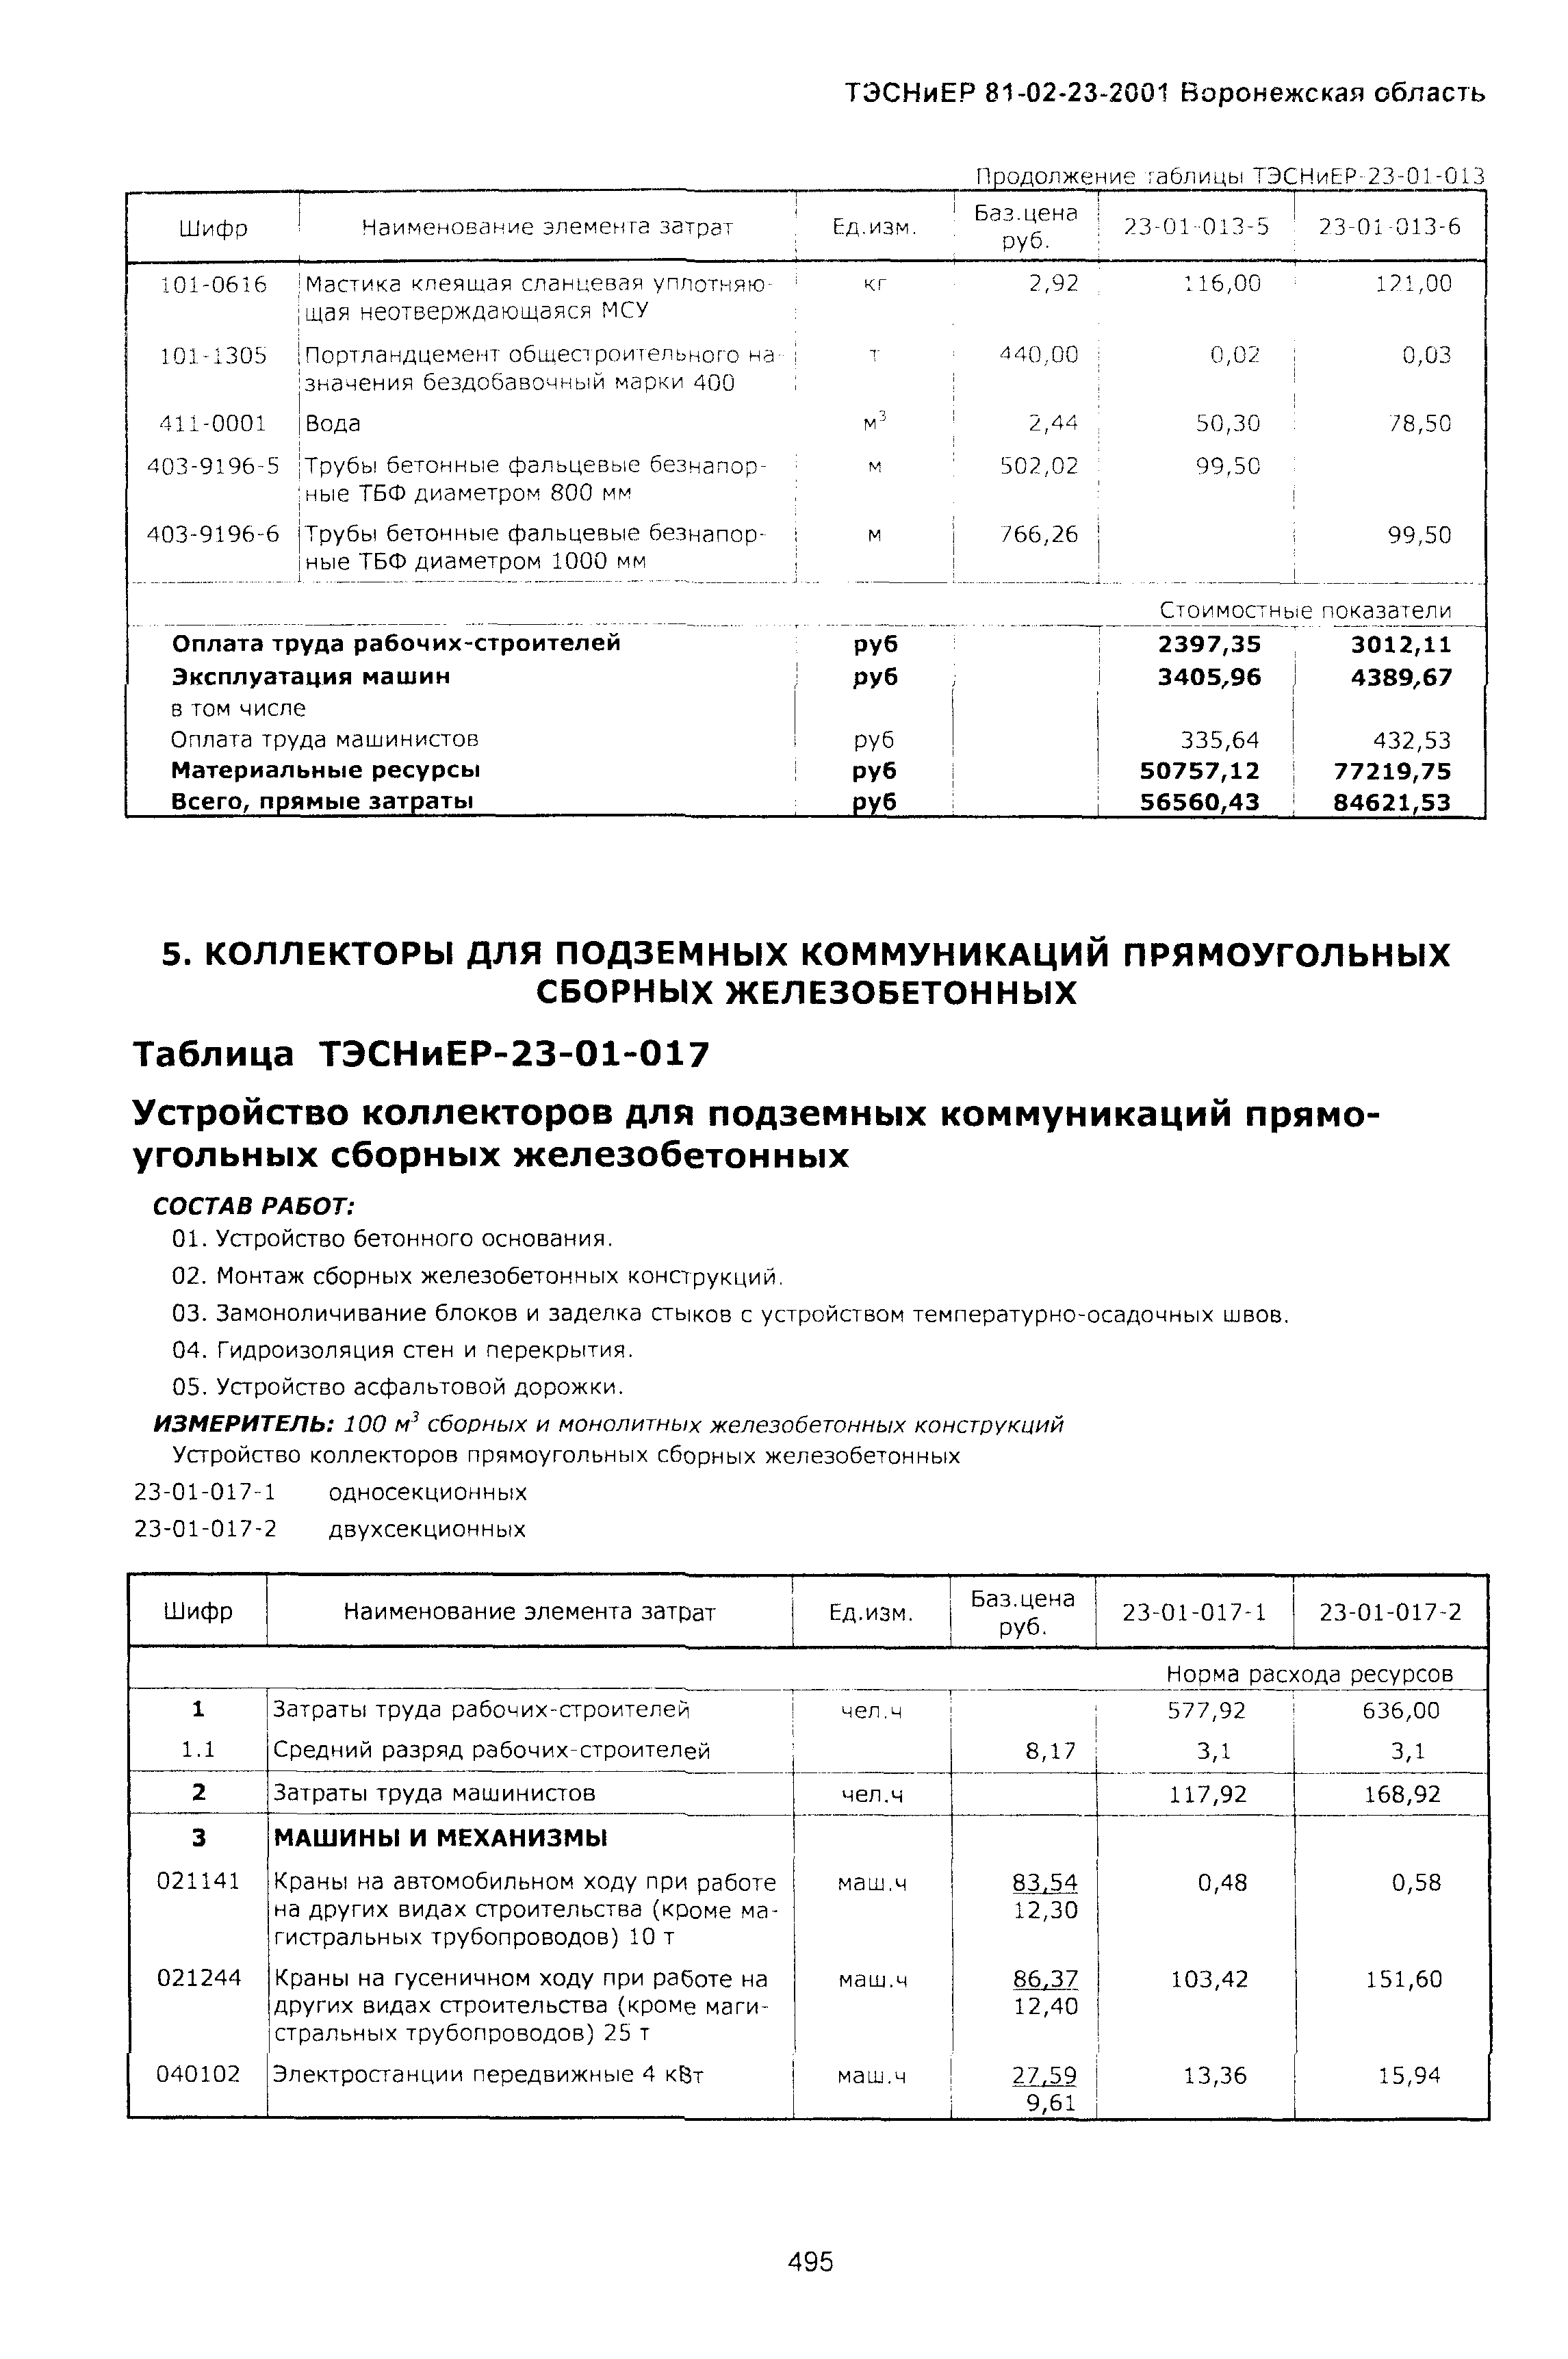 ТЭСНиЕР Воронежской области 81-02-23-2001